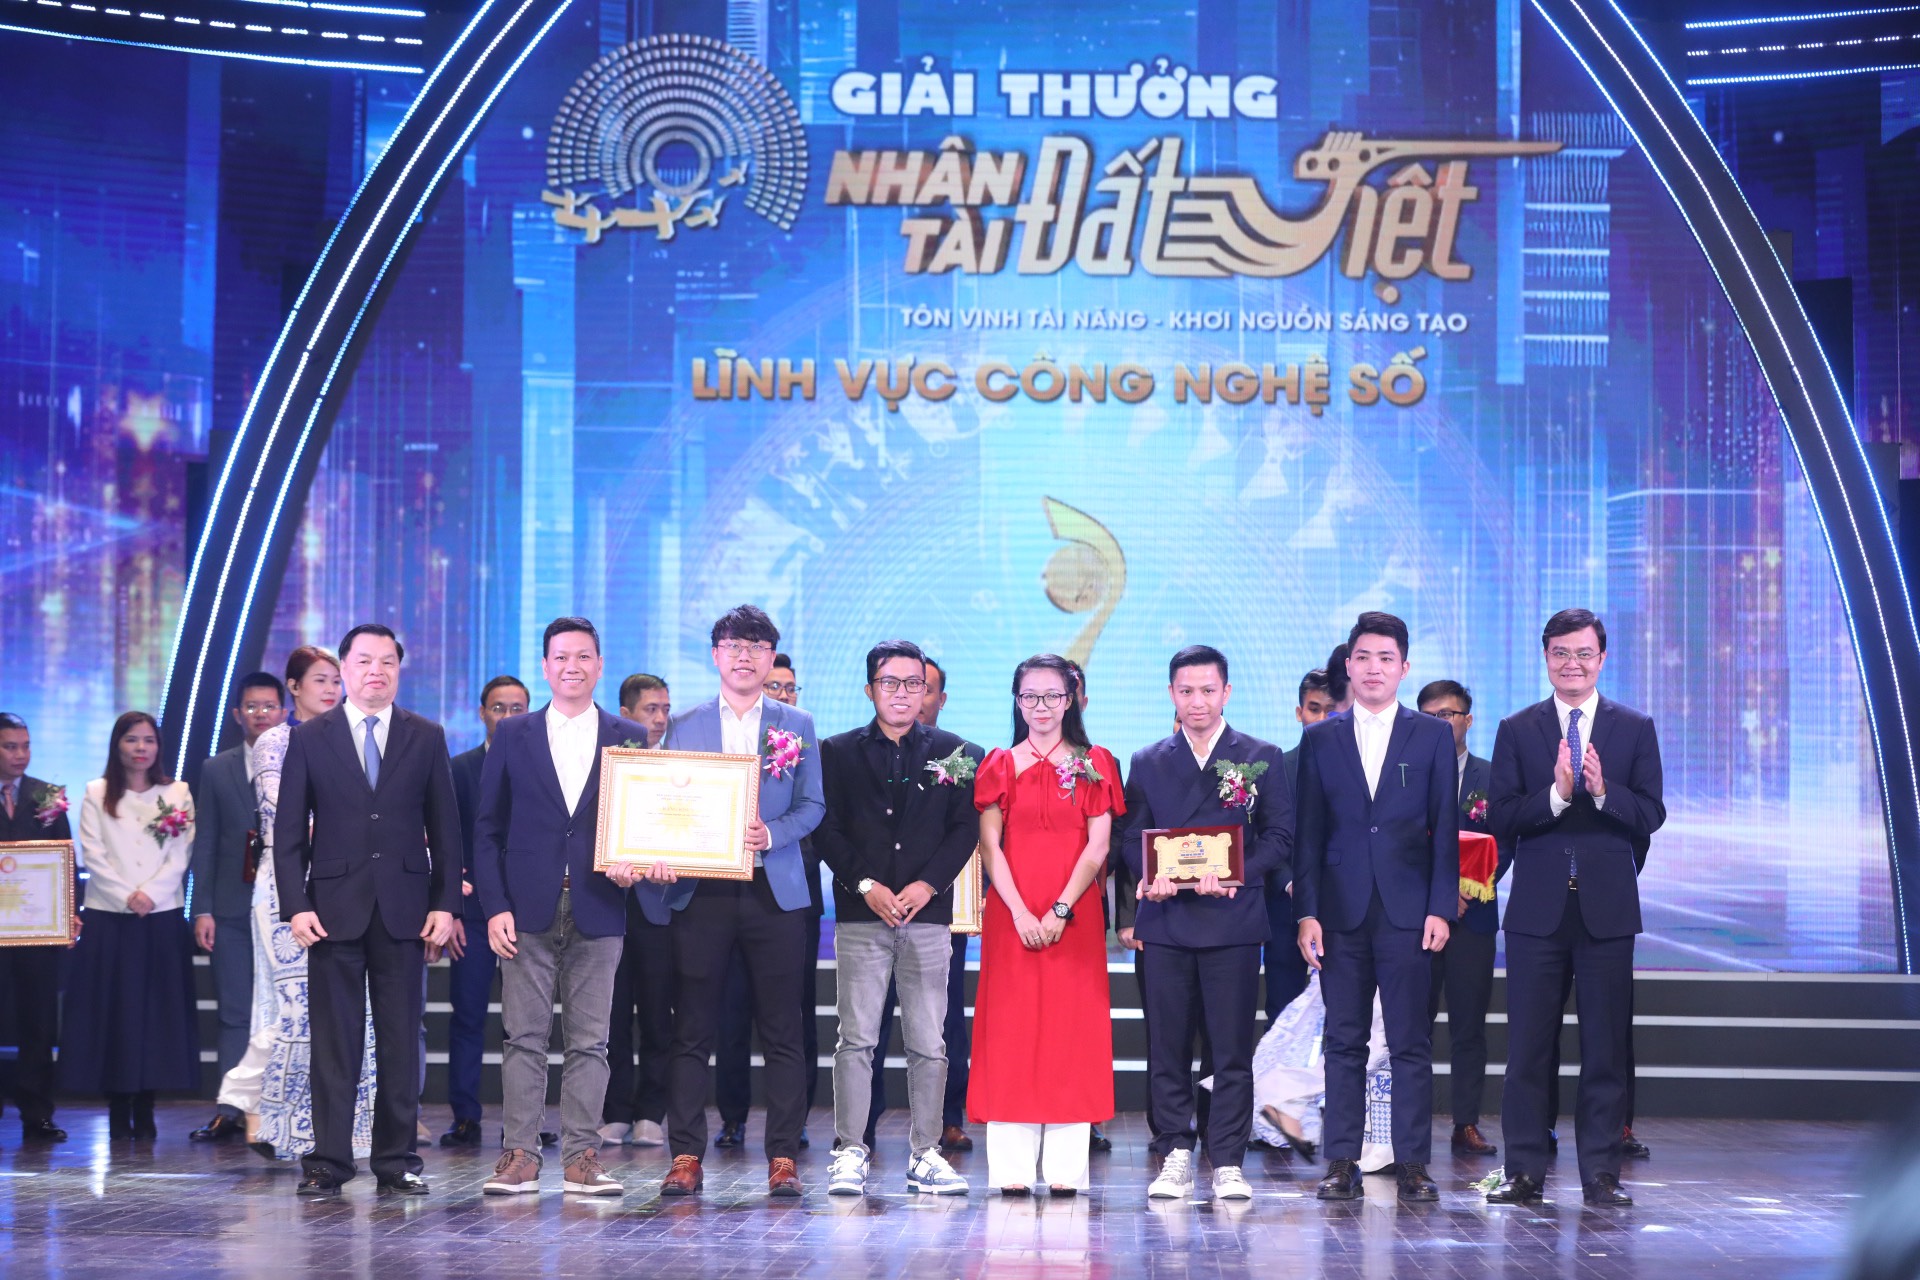 Nhóm tác giả Chống lừa đảo được vinh danh tại Giải thưởng Nhân tài Đất Việt 2023 “Cống hiến vì Cộng đồng”.